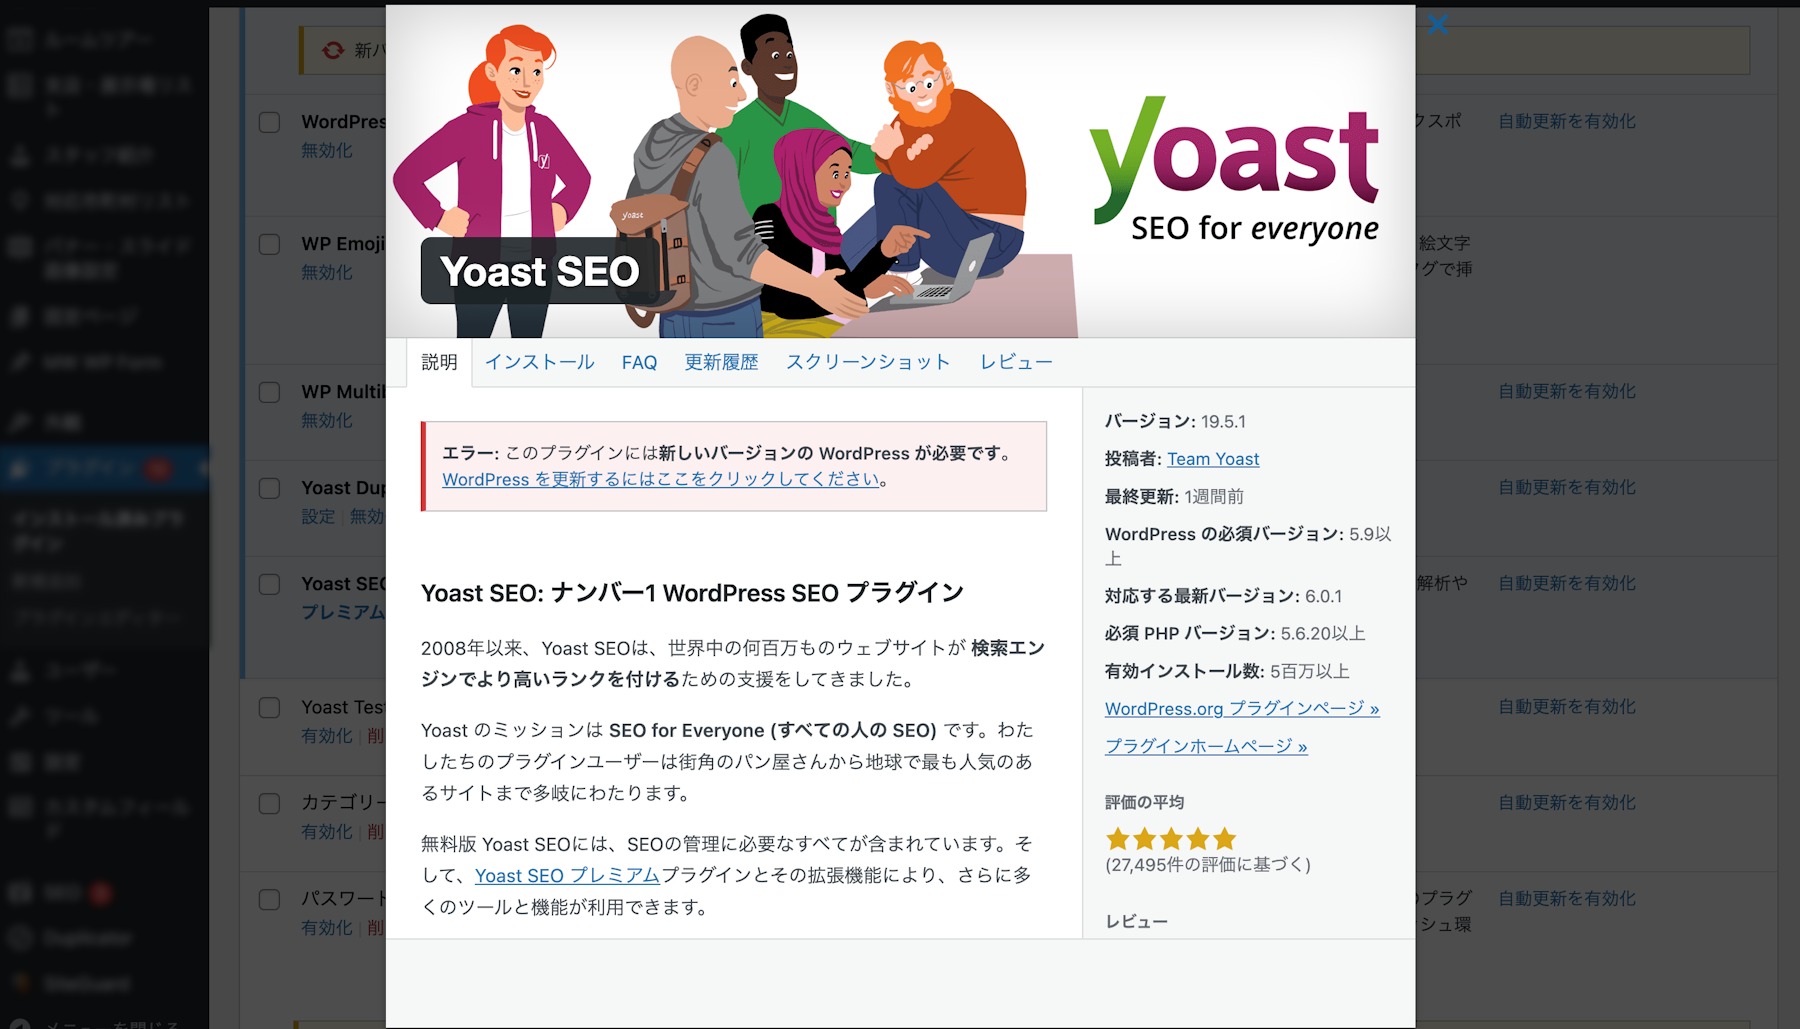 【WordPress】Yoast SEOでタイトルタグをfunctions.phpから変更する